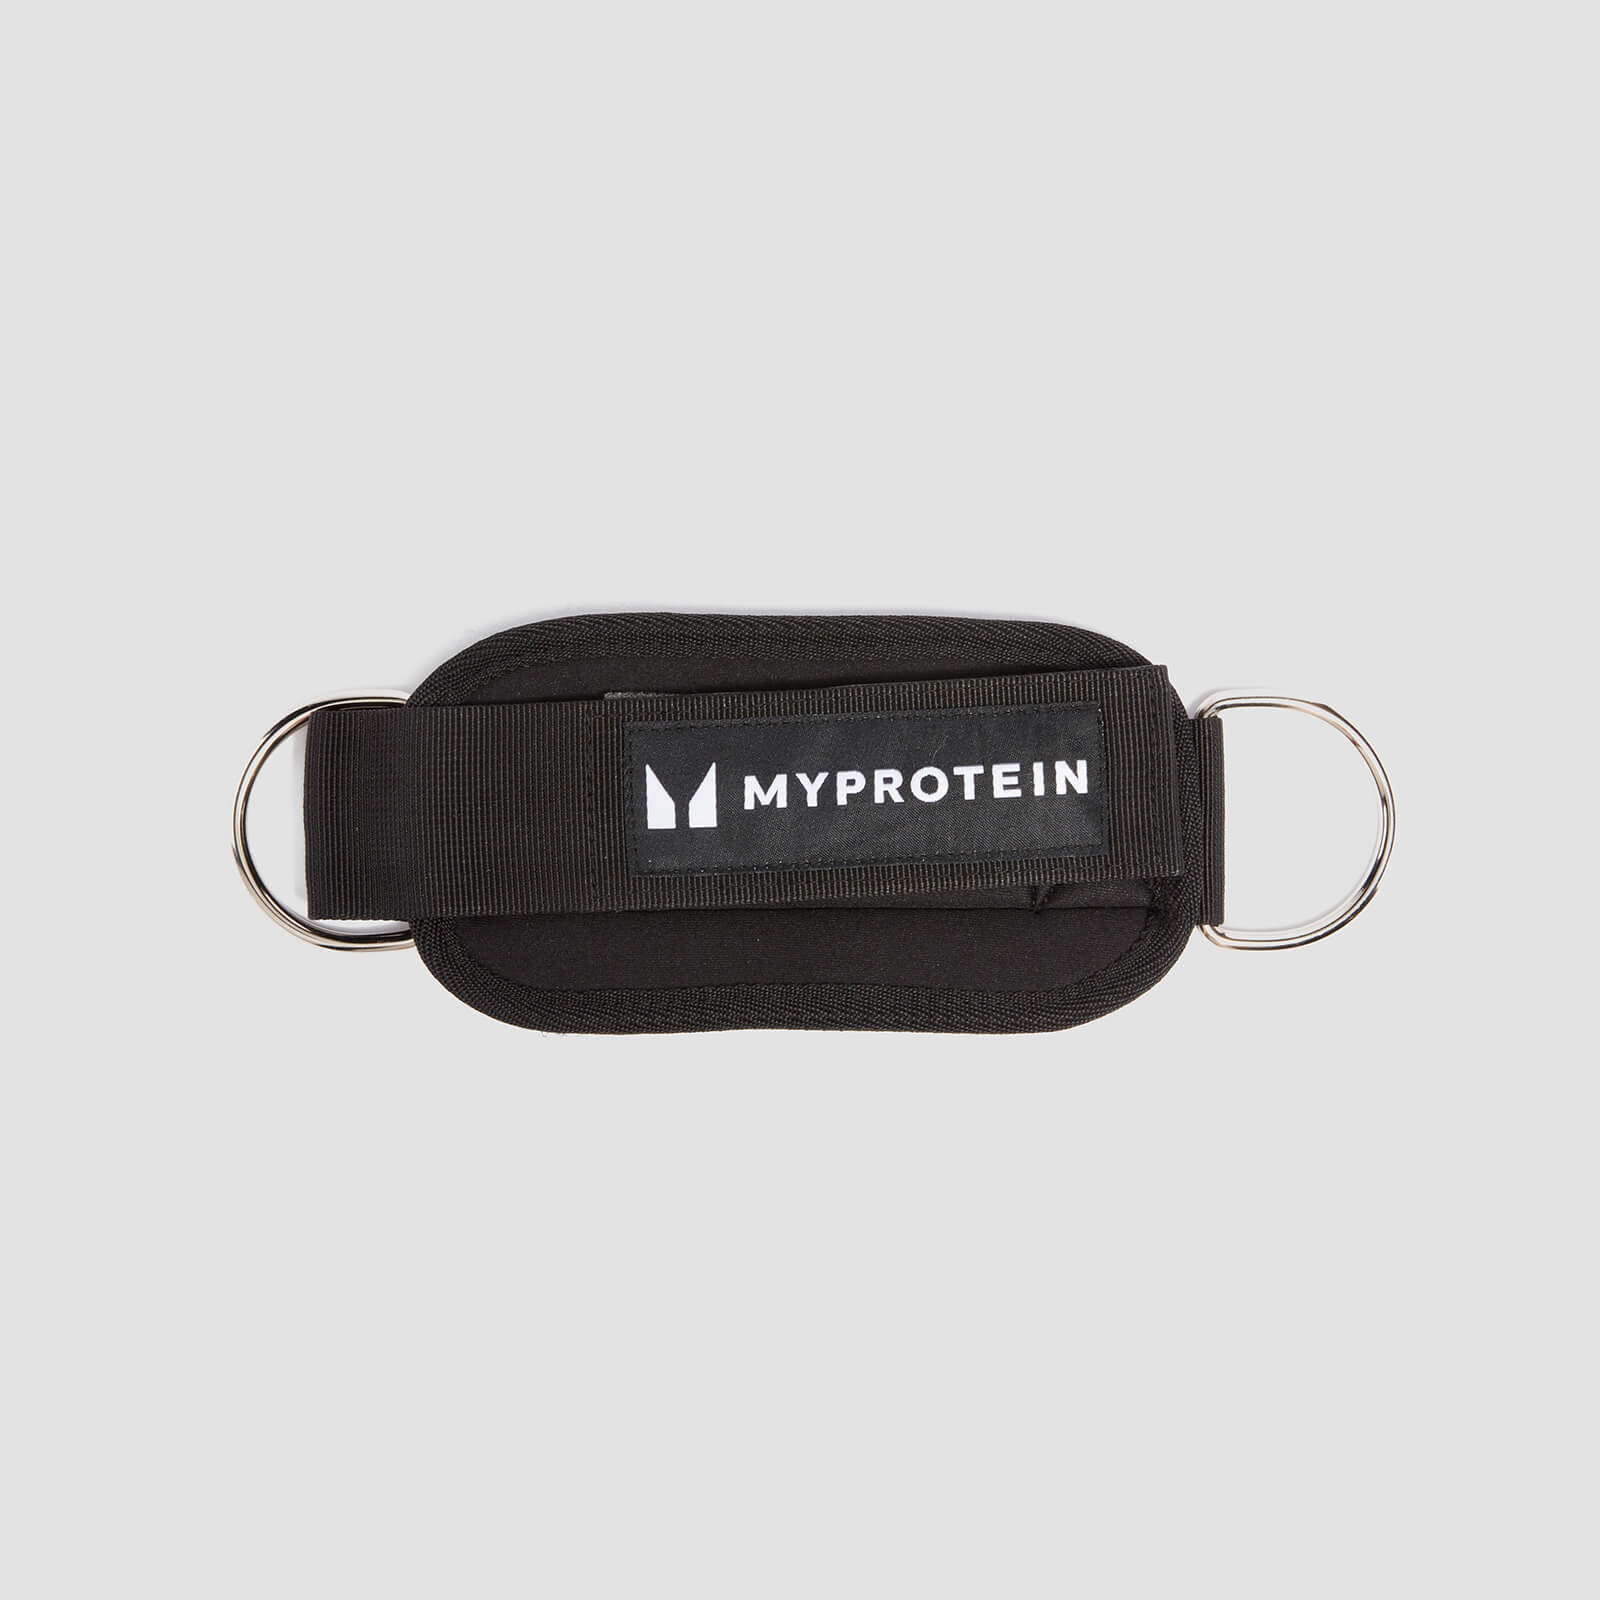 Myprotein Ankle Cuffs - Black